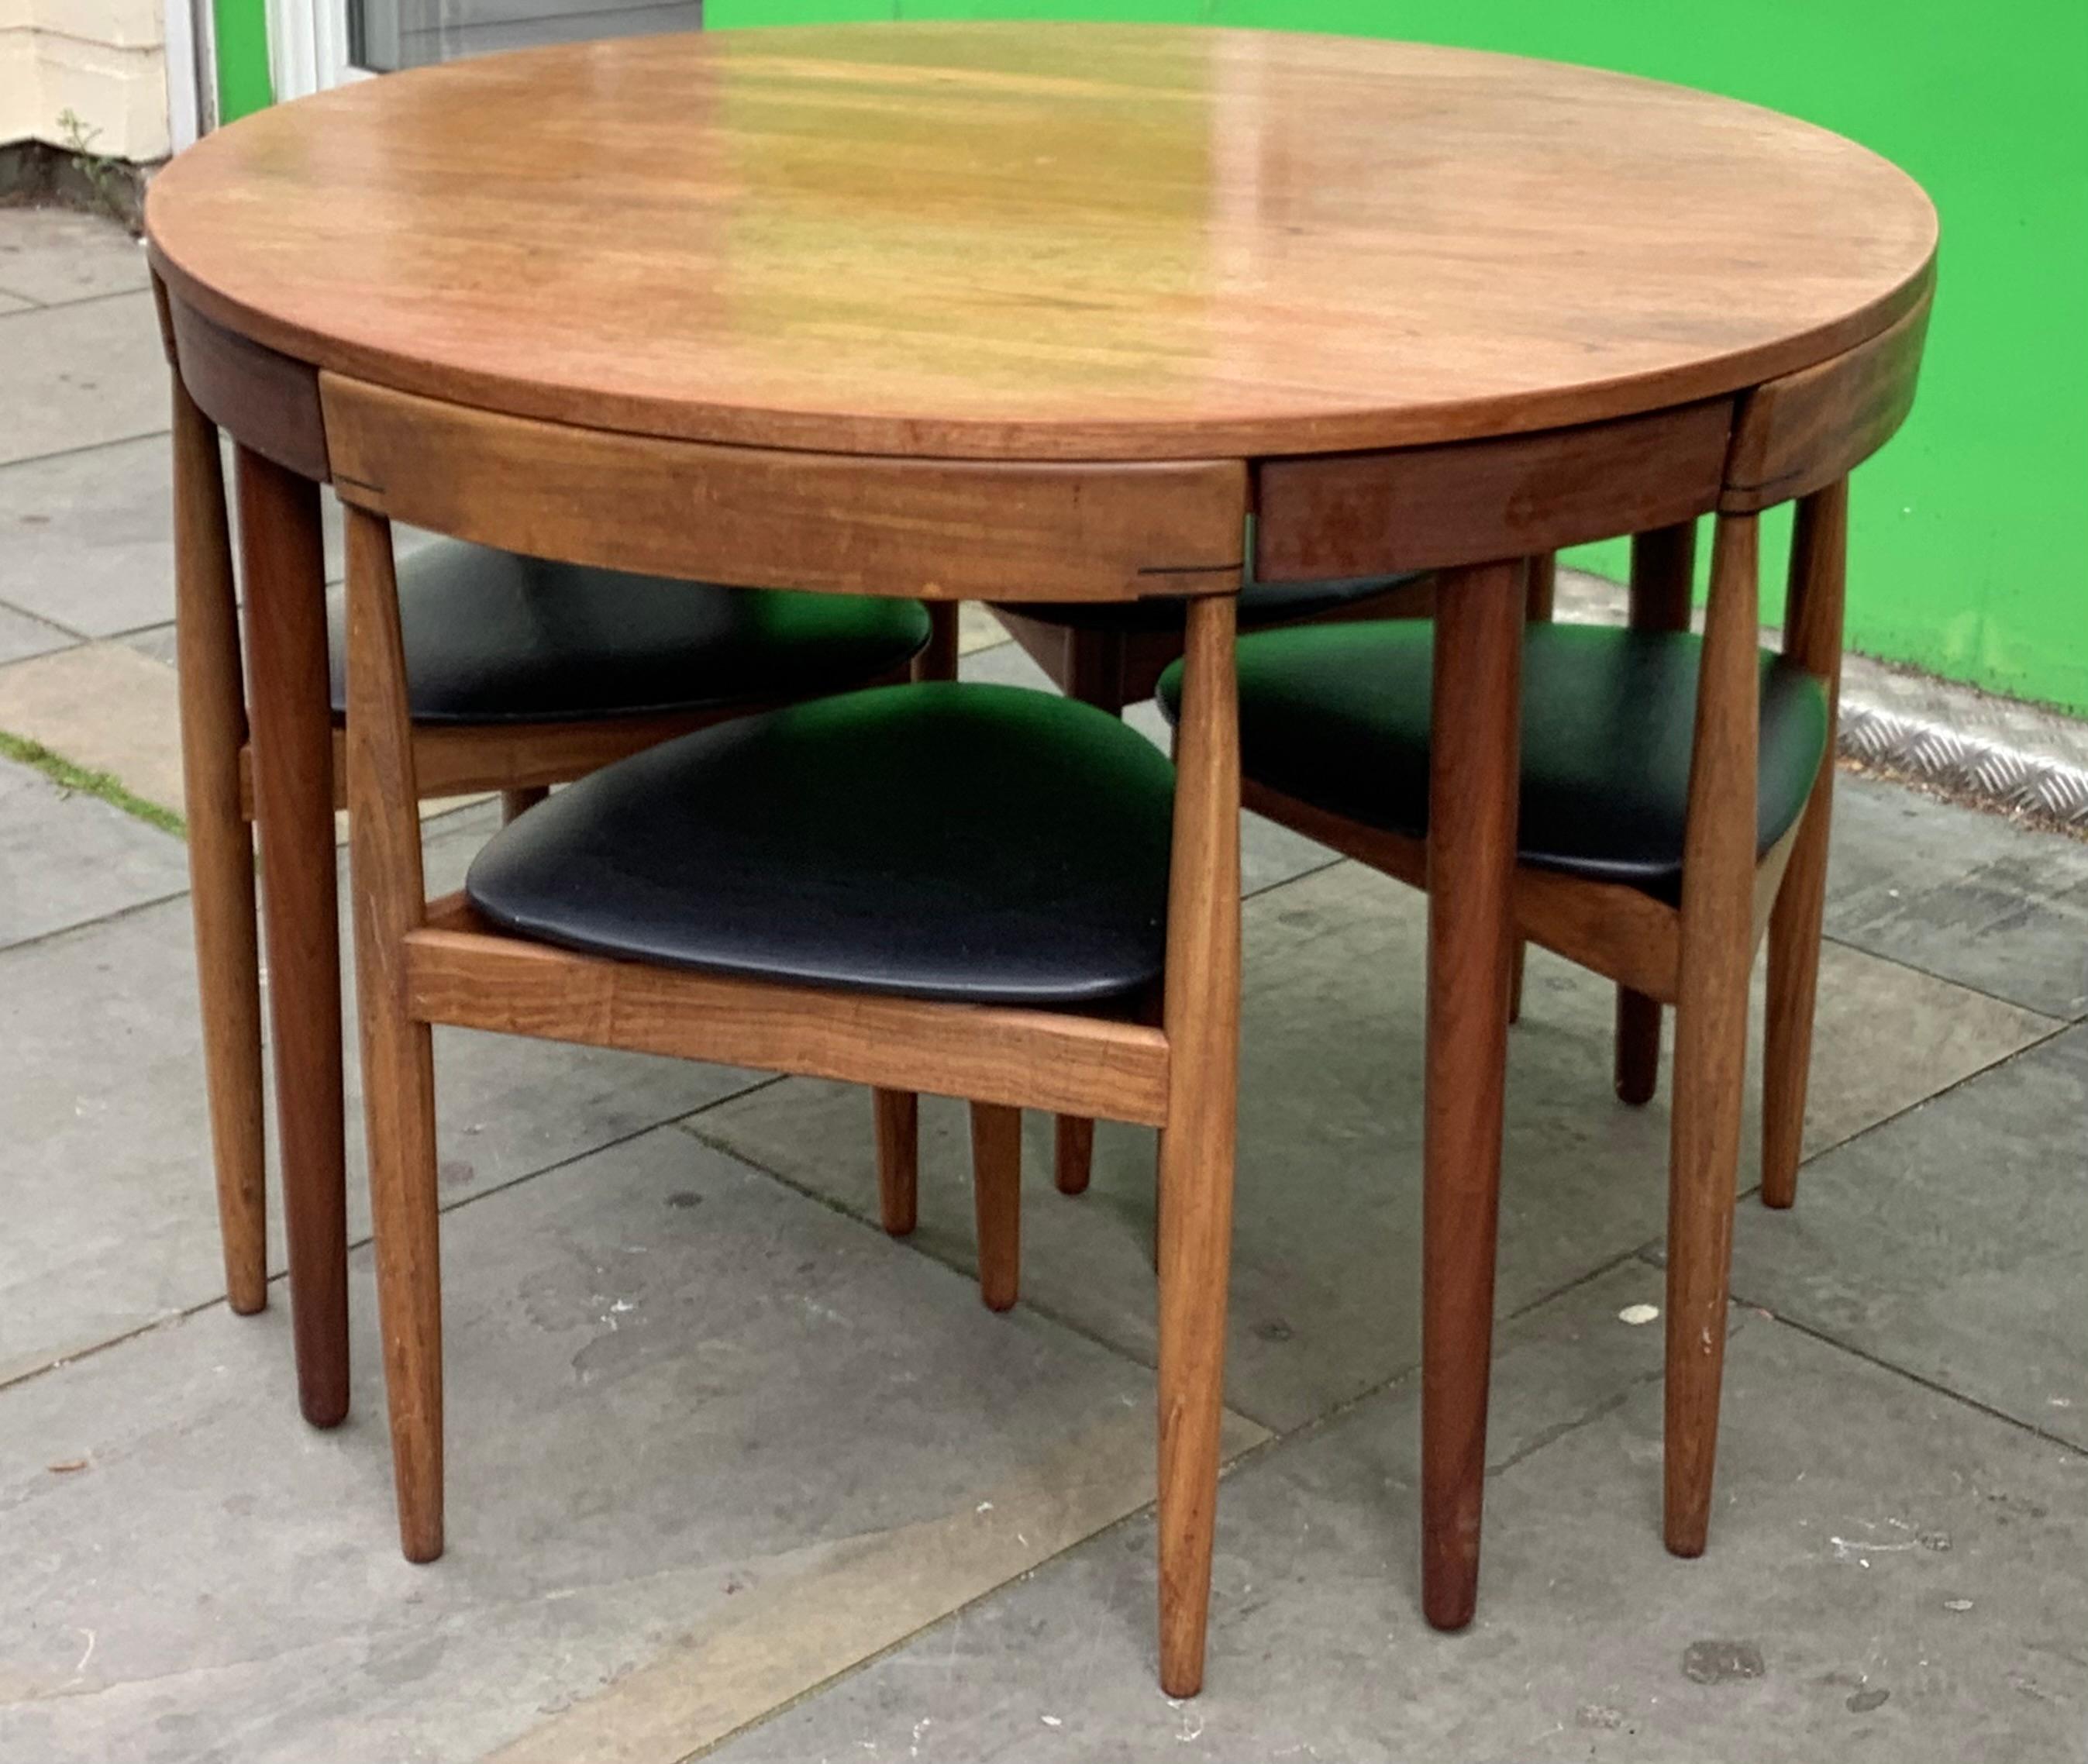 Esstisch und Stühle, entworfen von Hans Olsen für den dänischen Möbelhersteller Frem Rojle im Jahr 1962, sind zu einem geschätzten dänischen Klassiker geworden.
Vier einzigartige dreibeinige Stühle fügen sich perfekt in die Schürze des Tisches ein